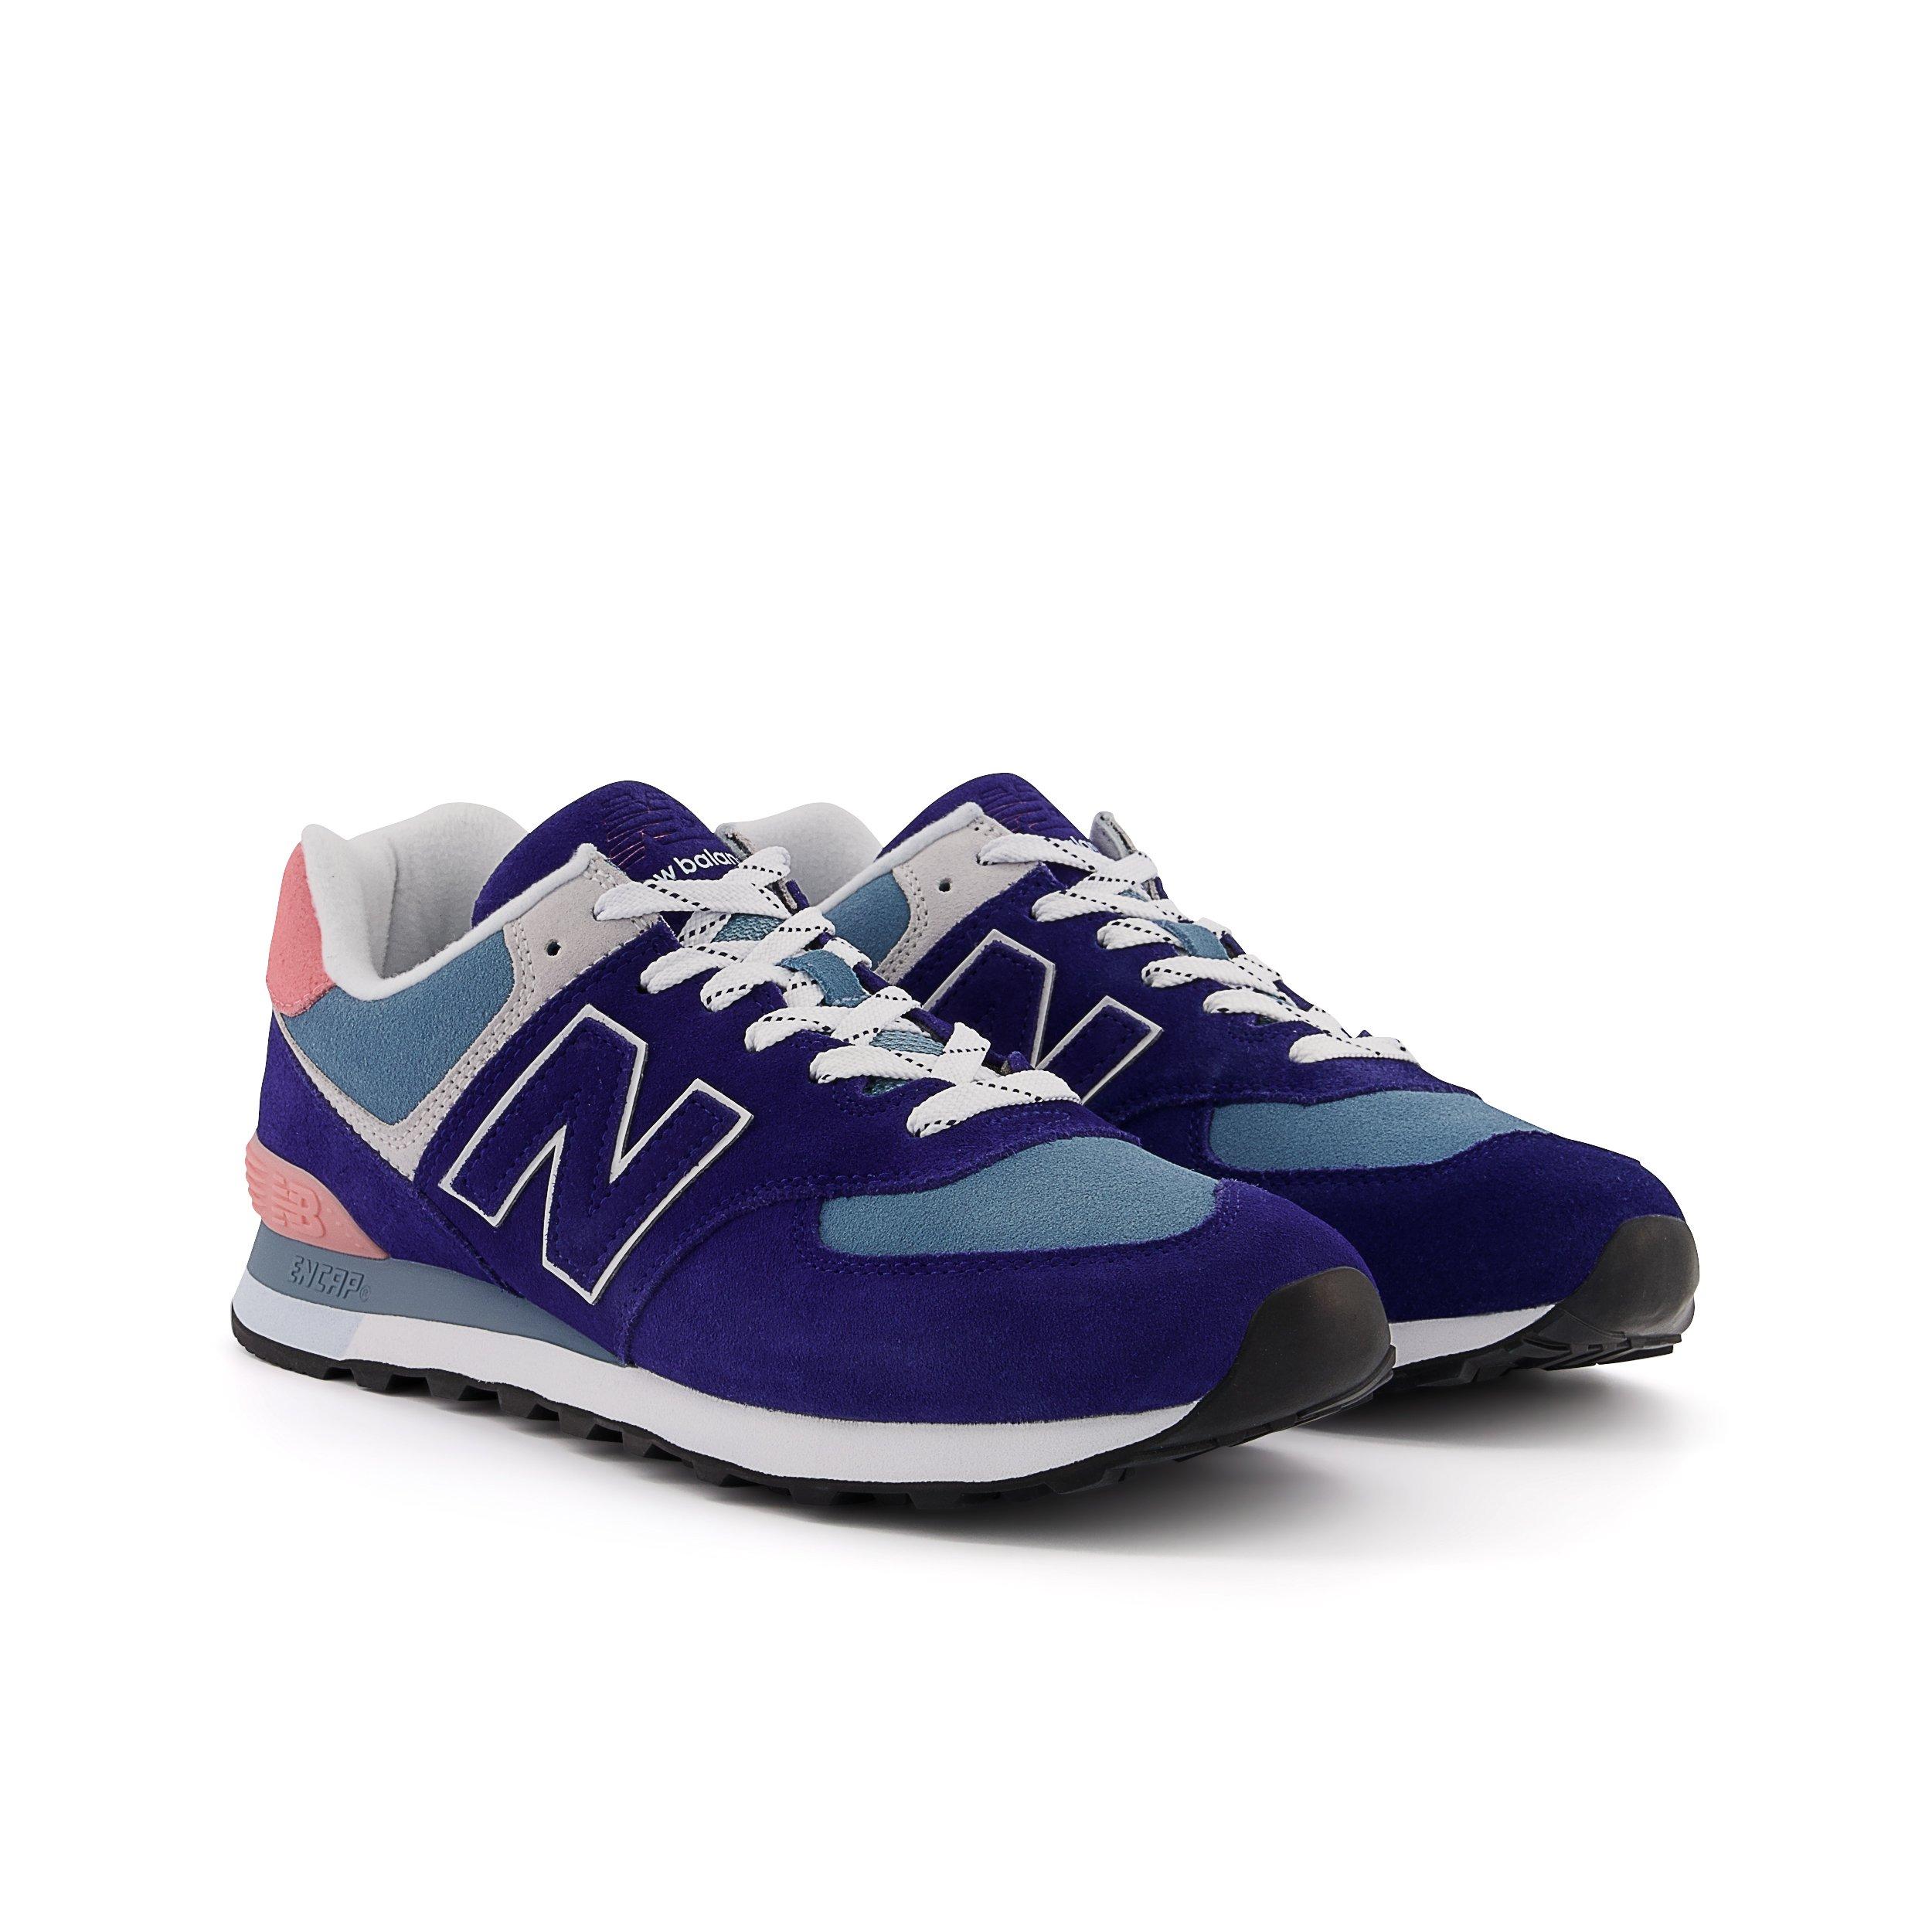 New 574 "Navy/Blue/Pink" Men's Shoe